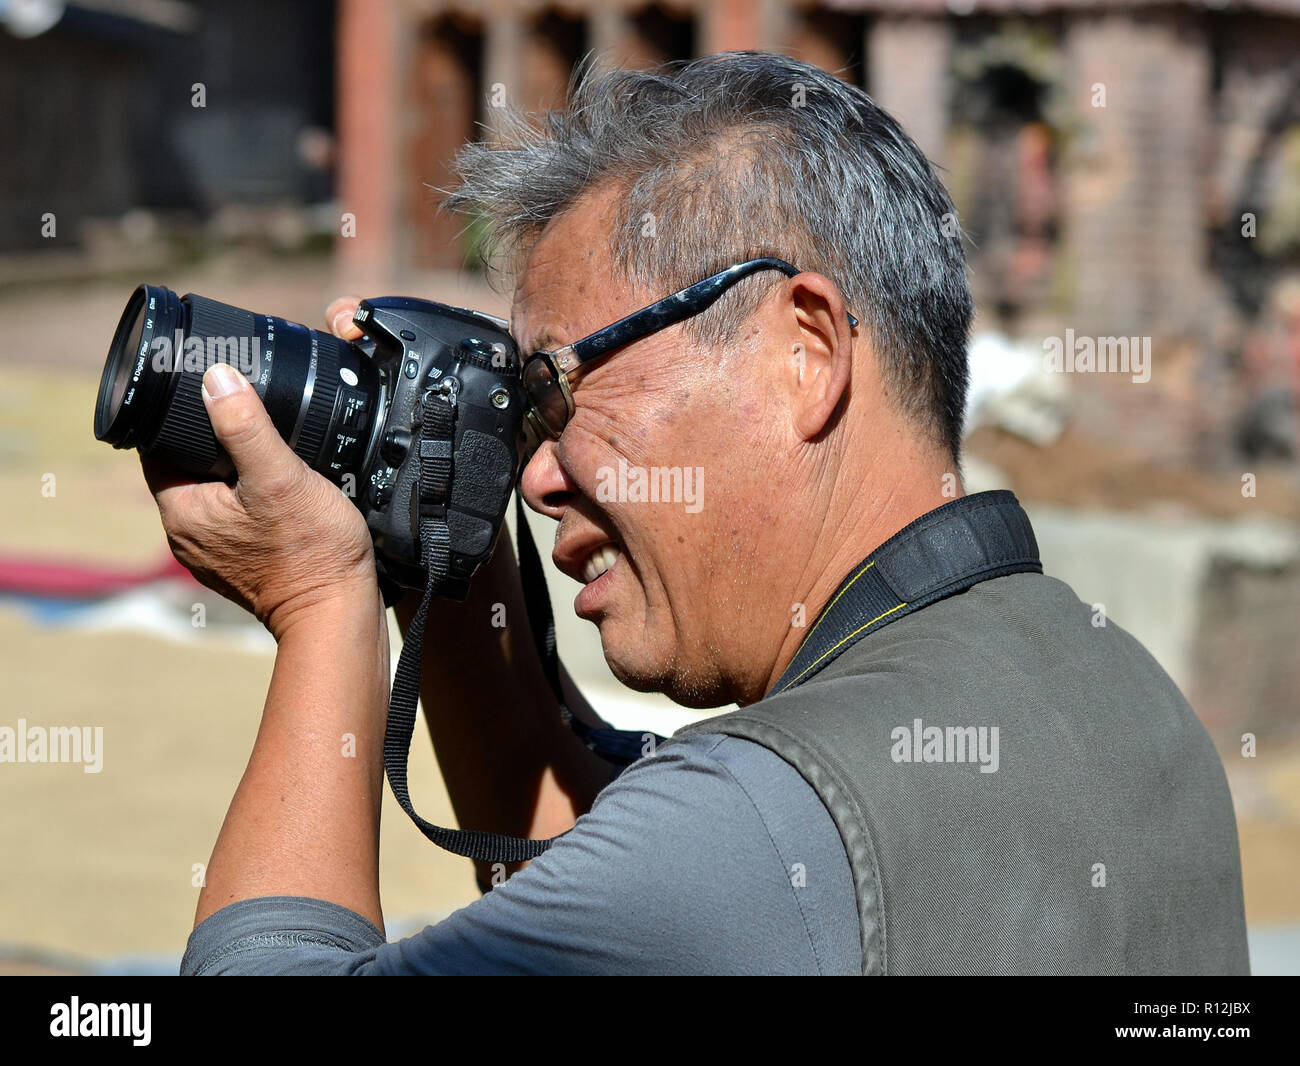 Di mezza età maschio cinese street fotografo prende la mira con la sua Nikon fotocamera reflex digitale. Foto Stock